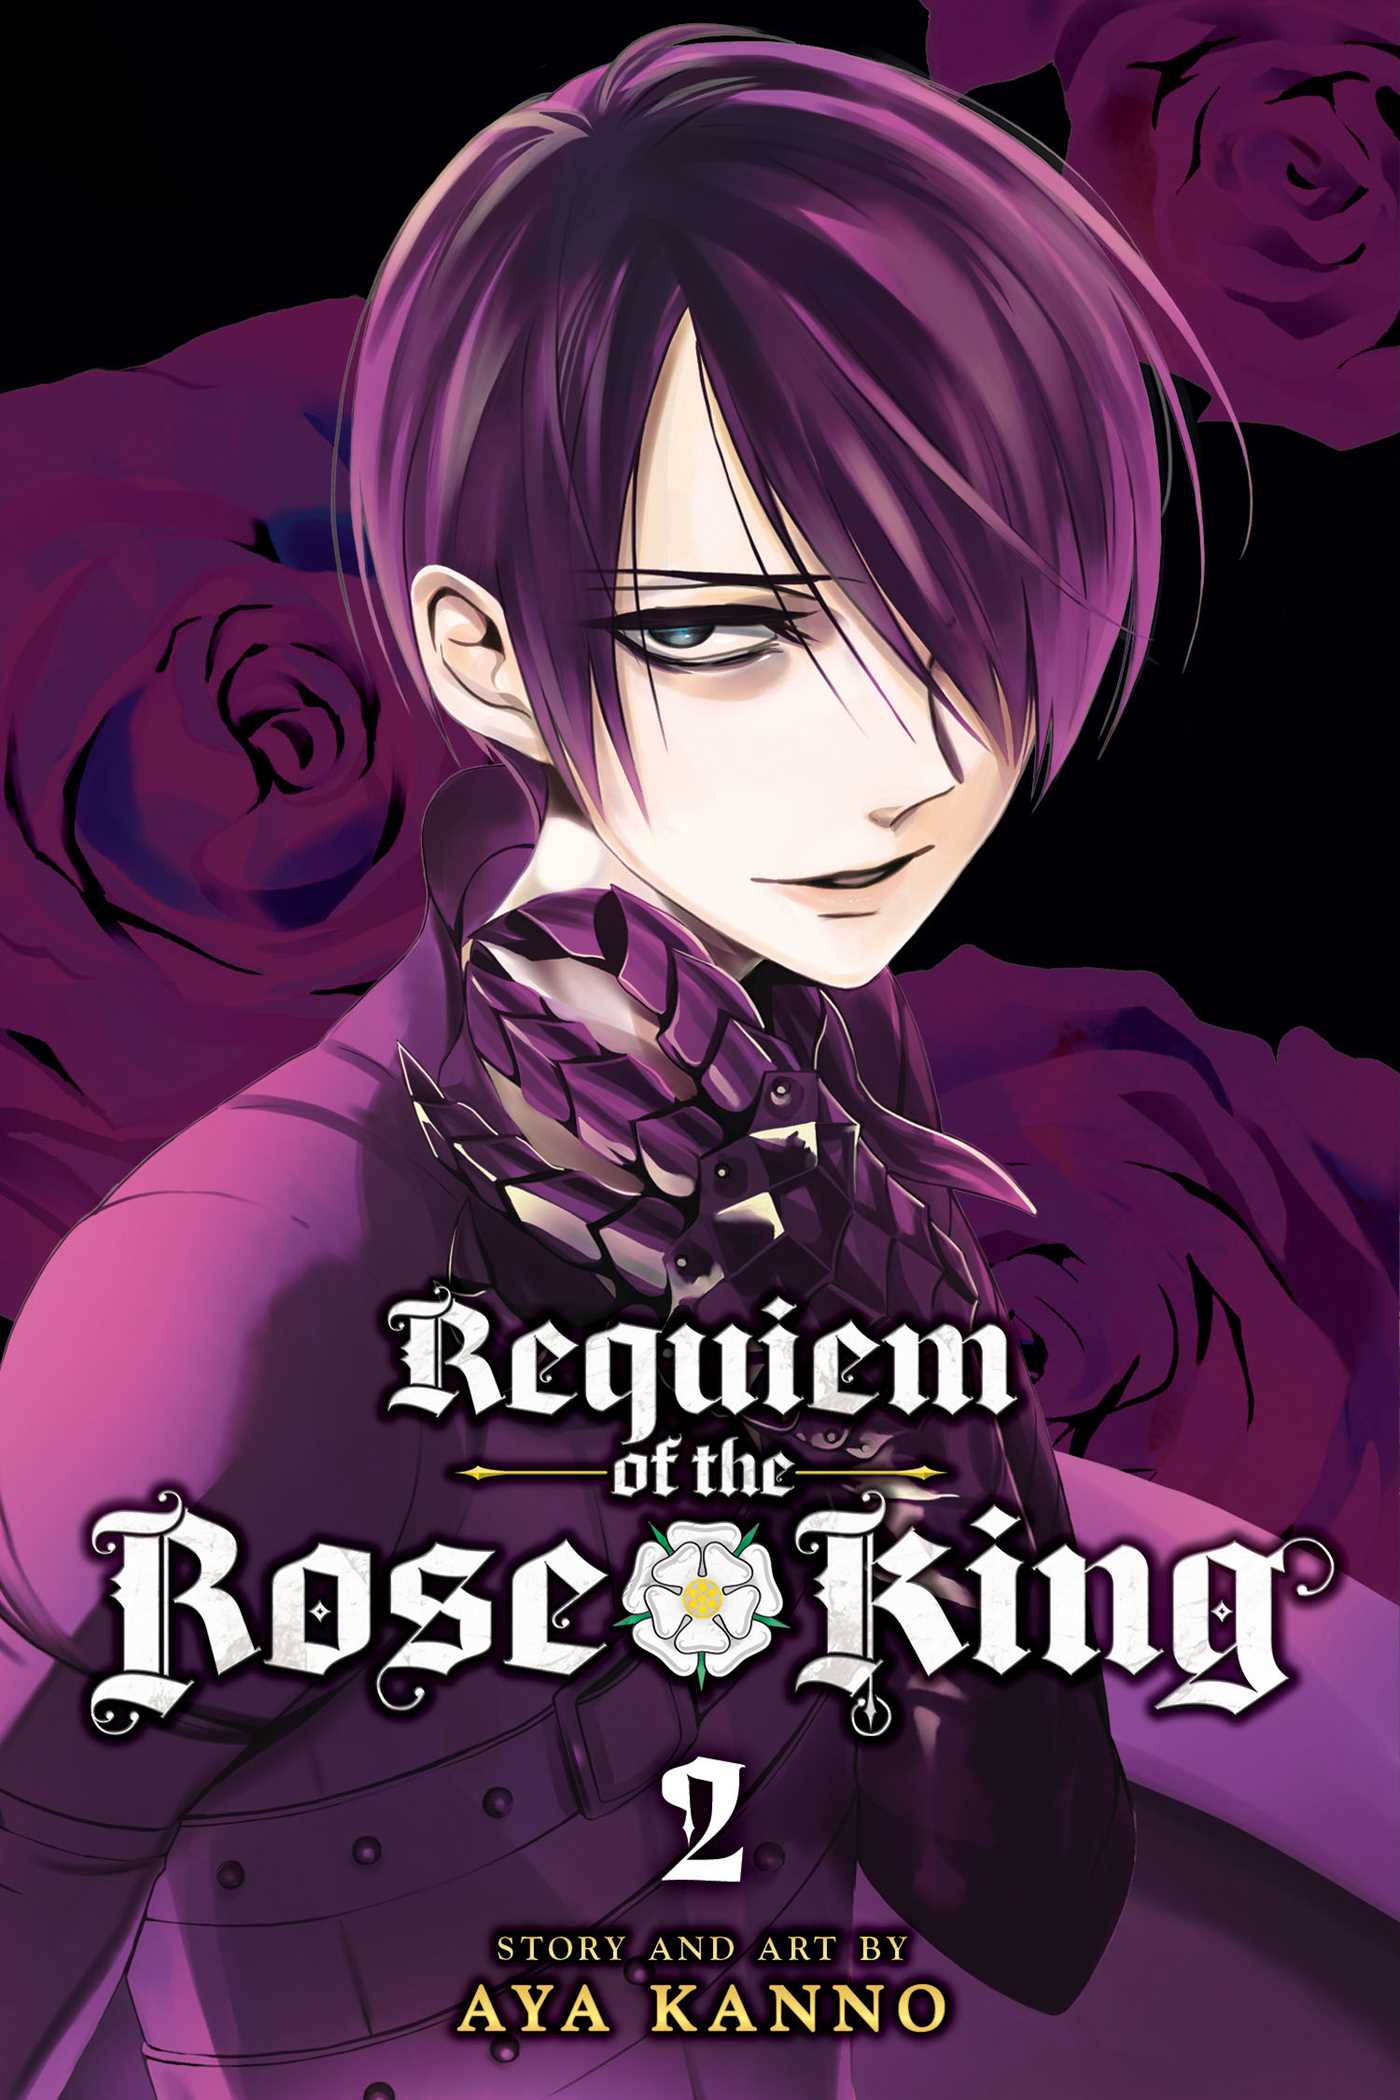 rose-king-news